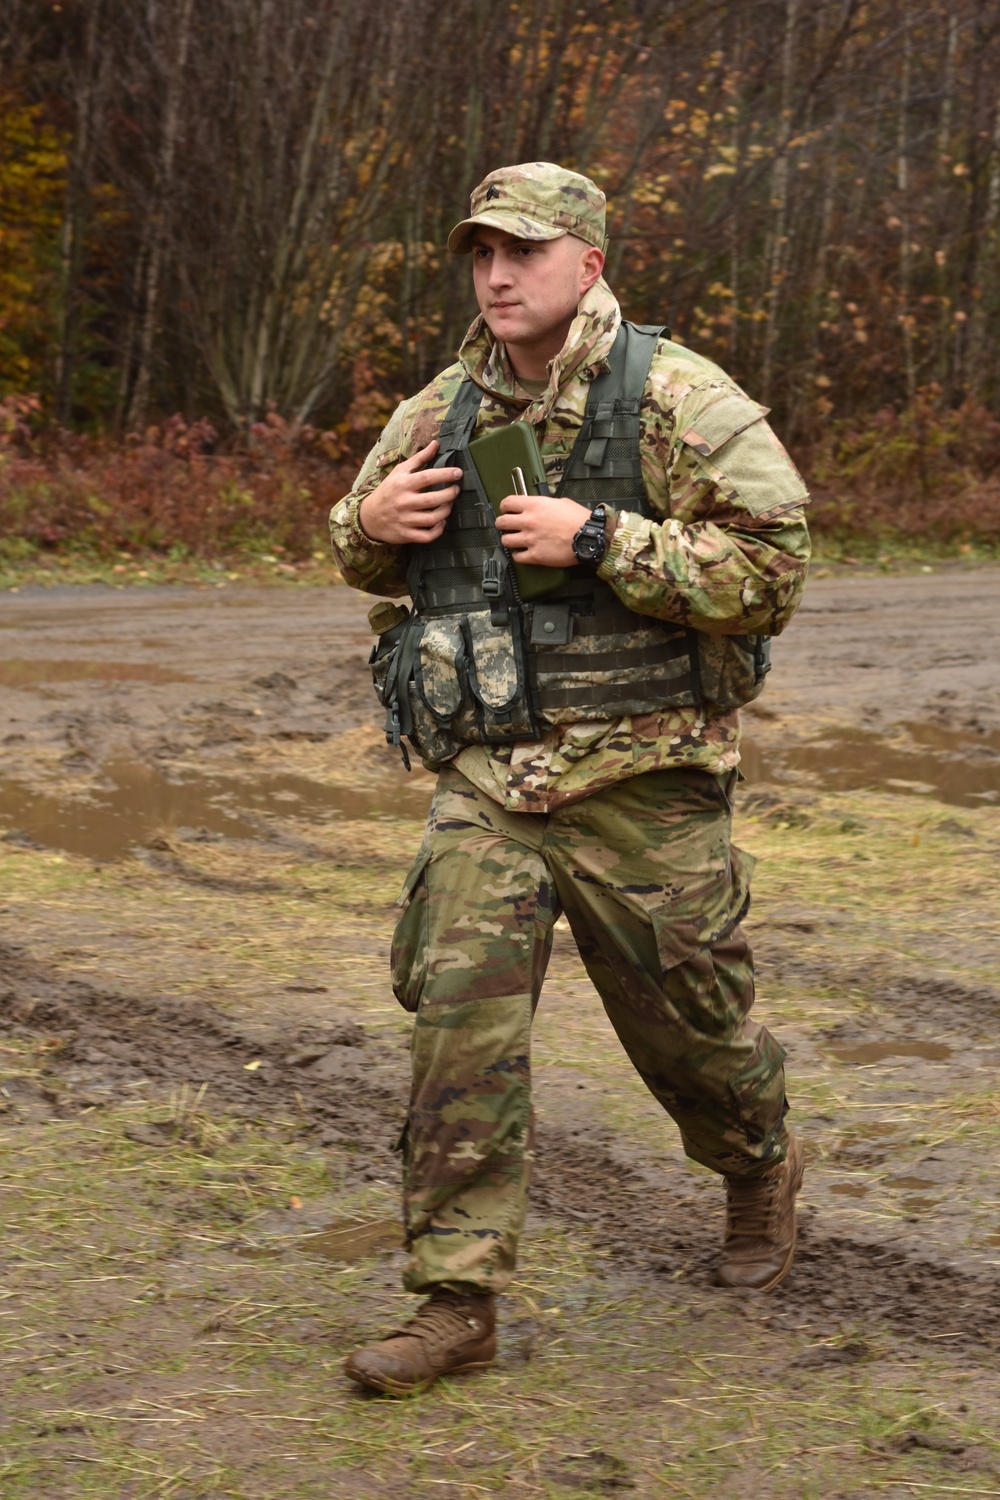 27th Brigade Soldier vie to be Best Warrior